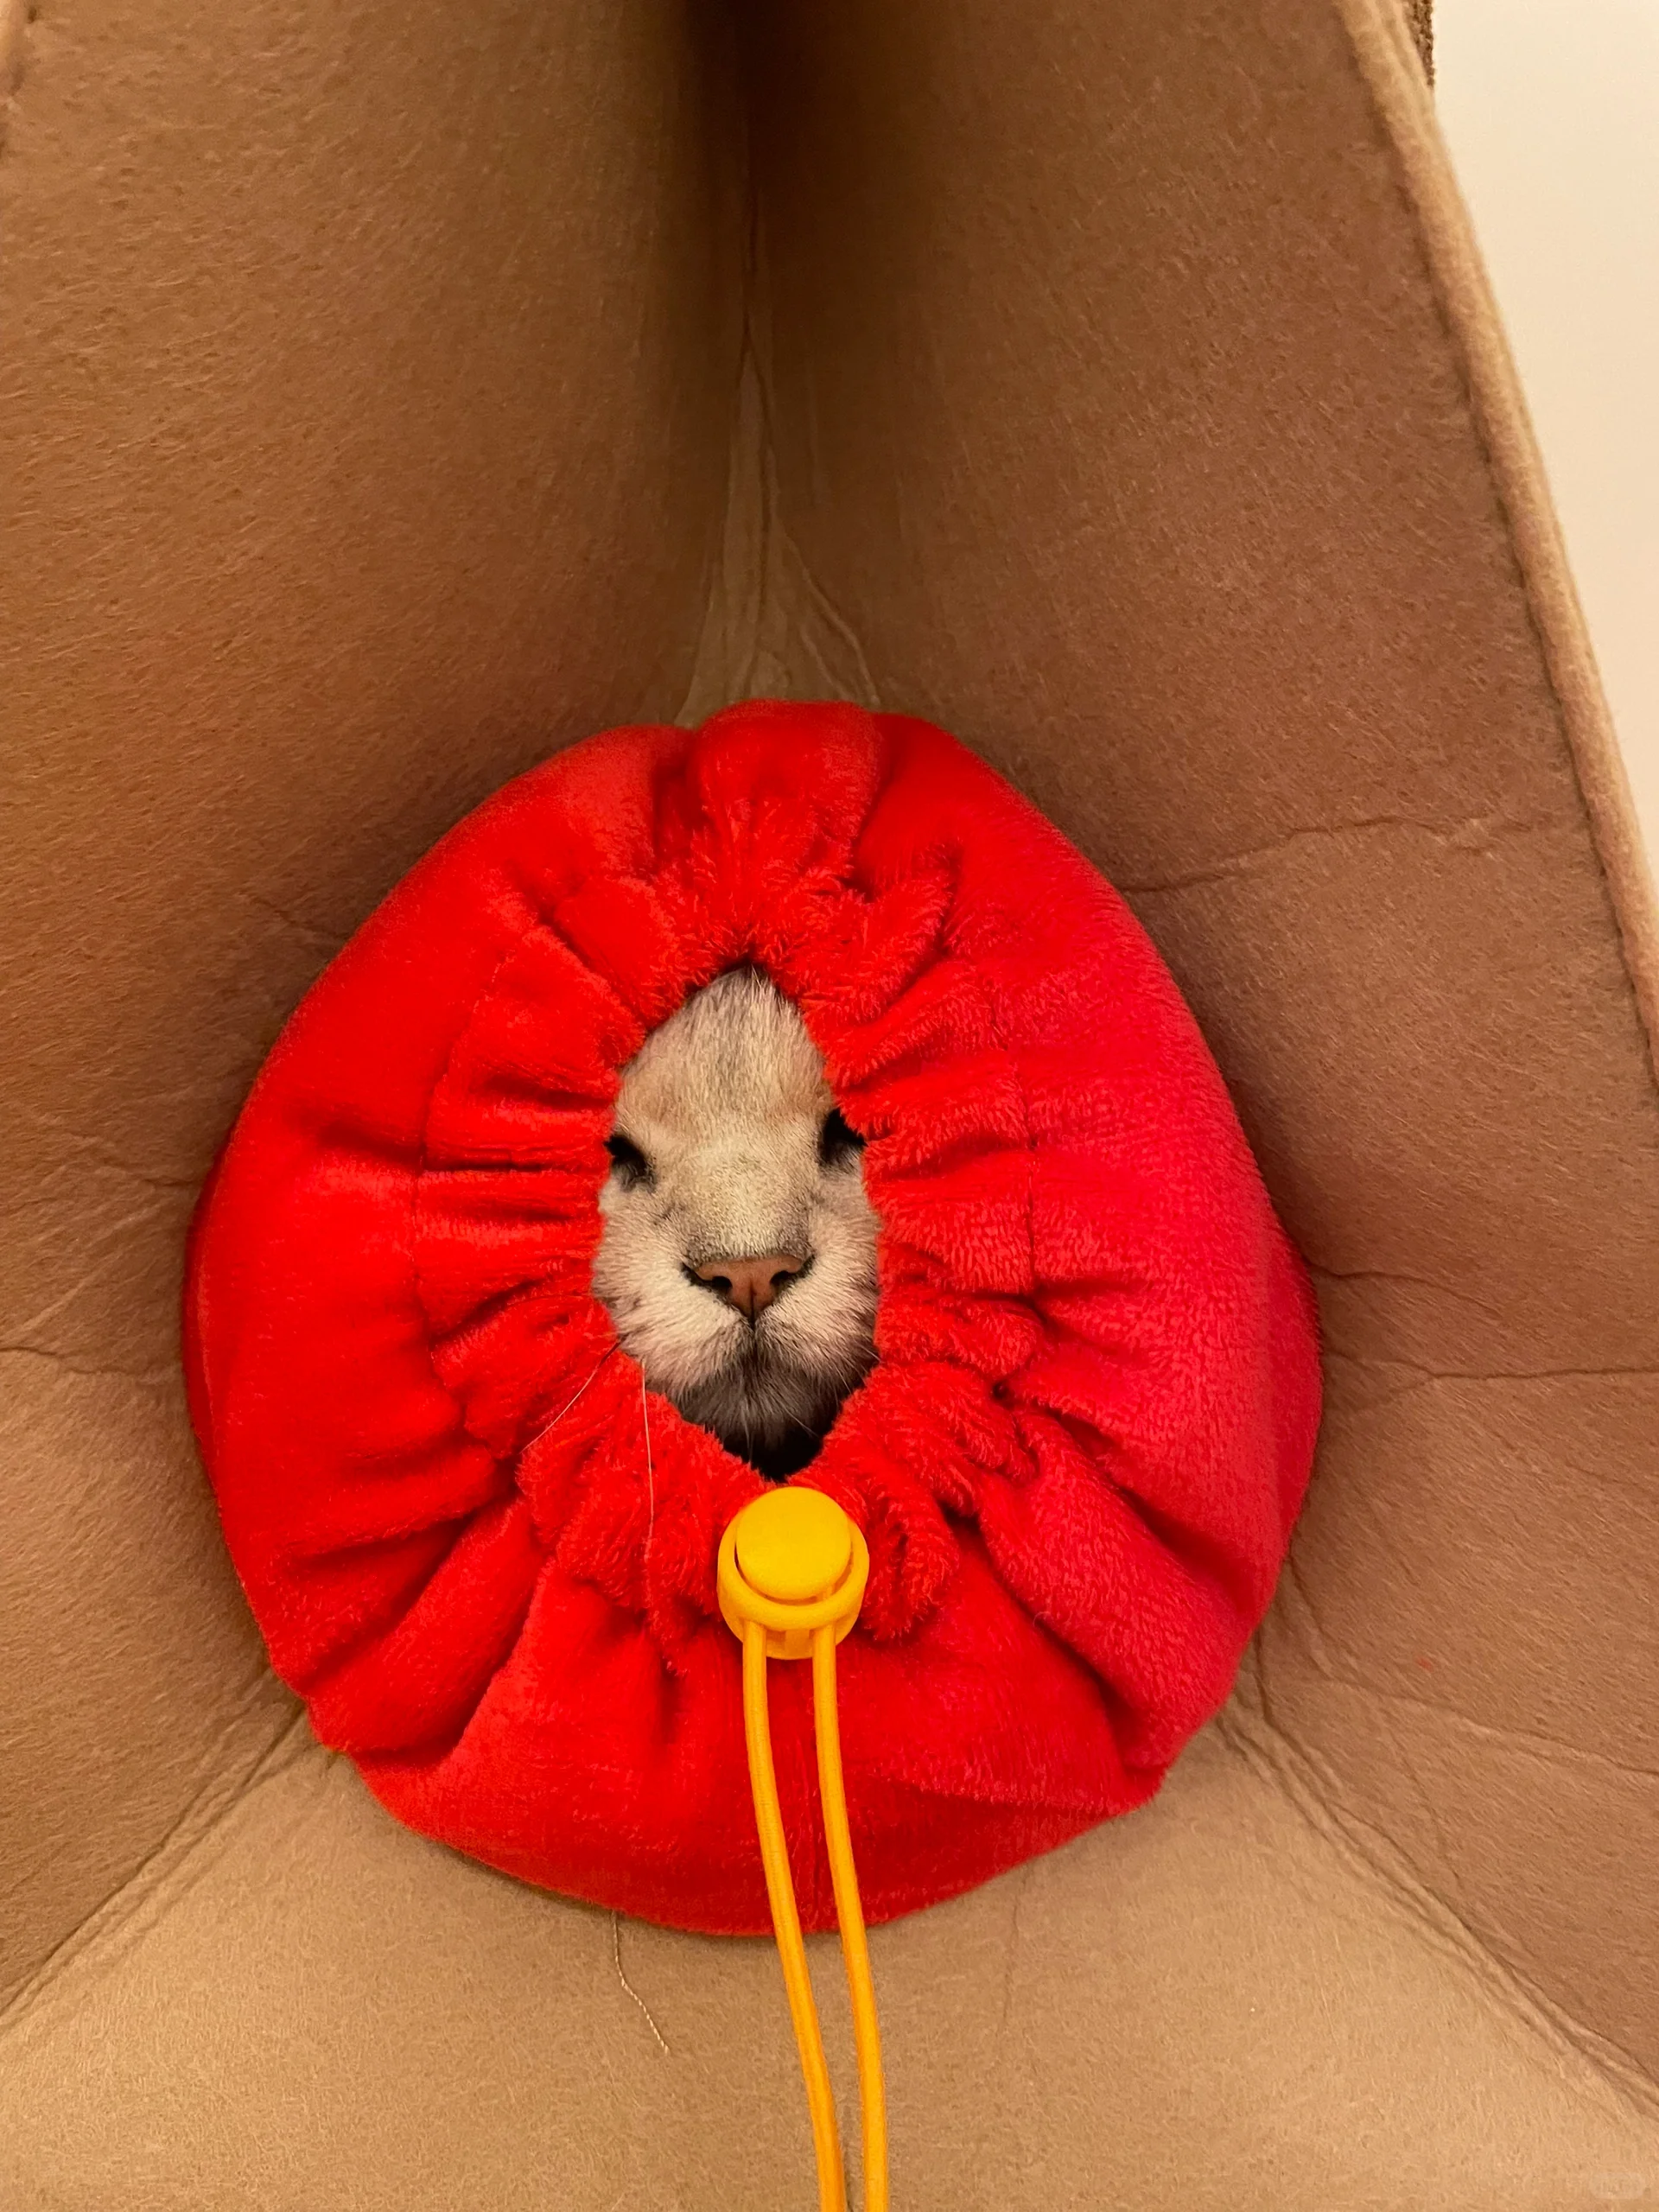 麥當勞推出「麥樂送喵喵雙人餐」送可愛貓窩